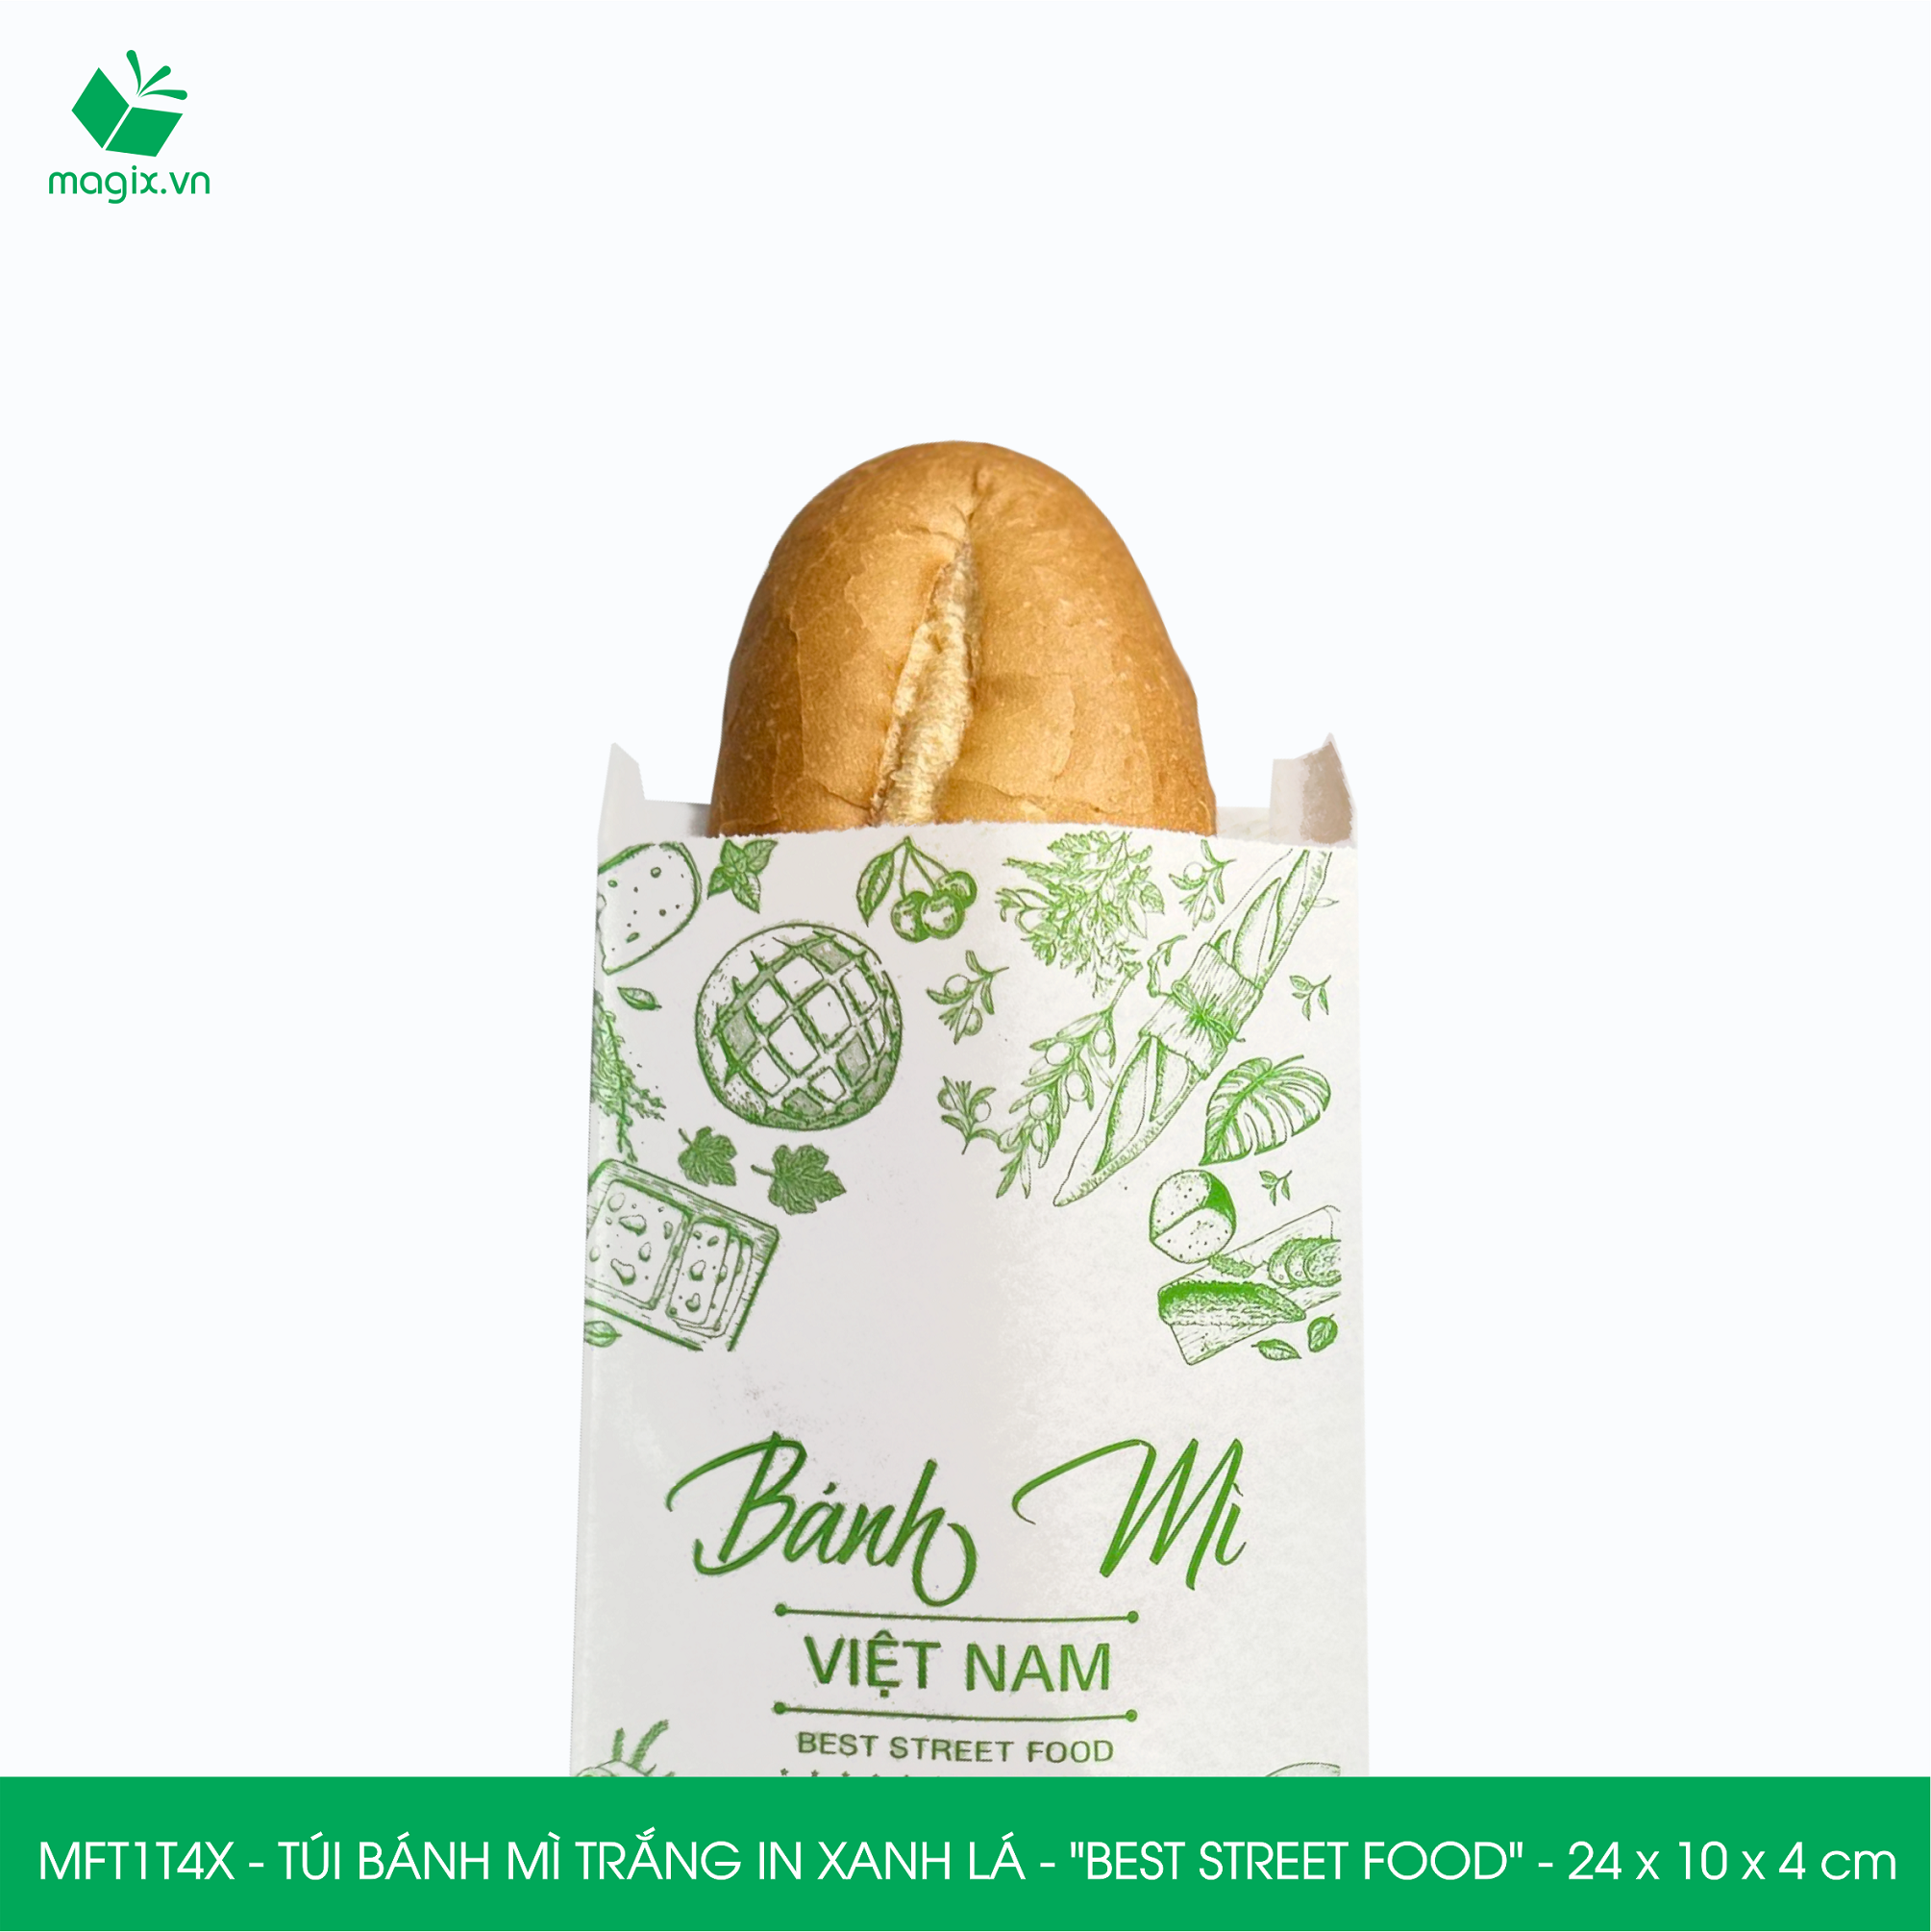 MFT1T4X - 24x10x4 cm - 1000 Túi bánh mì Trắng, in sẵn họa tiết BEST STREET FOOD - Bao bánh mì Túi giấy thực phẩm an toàn